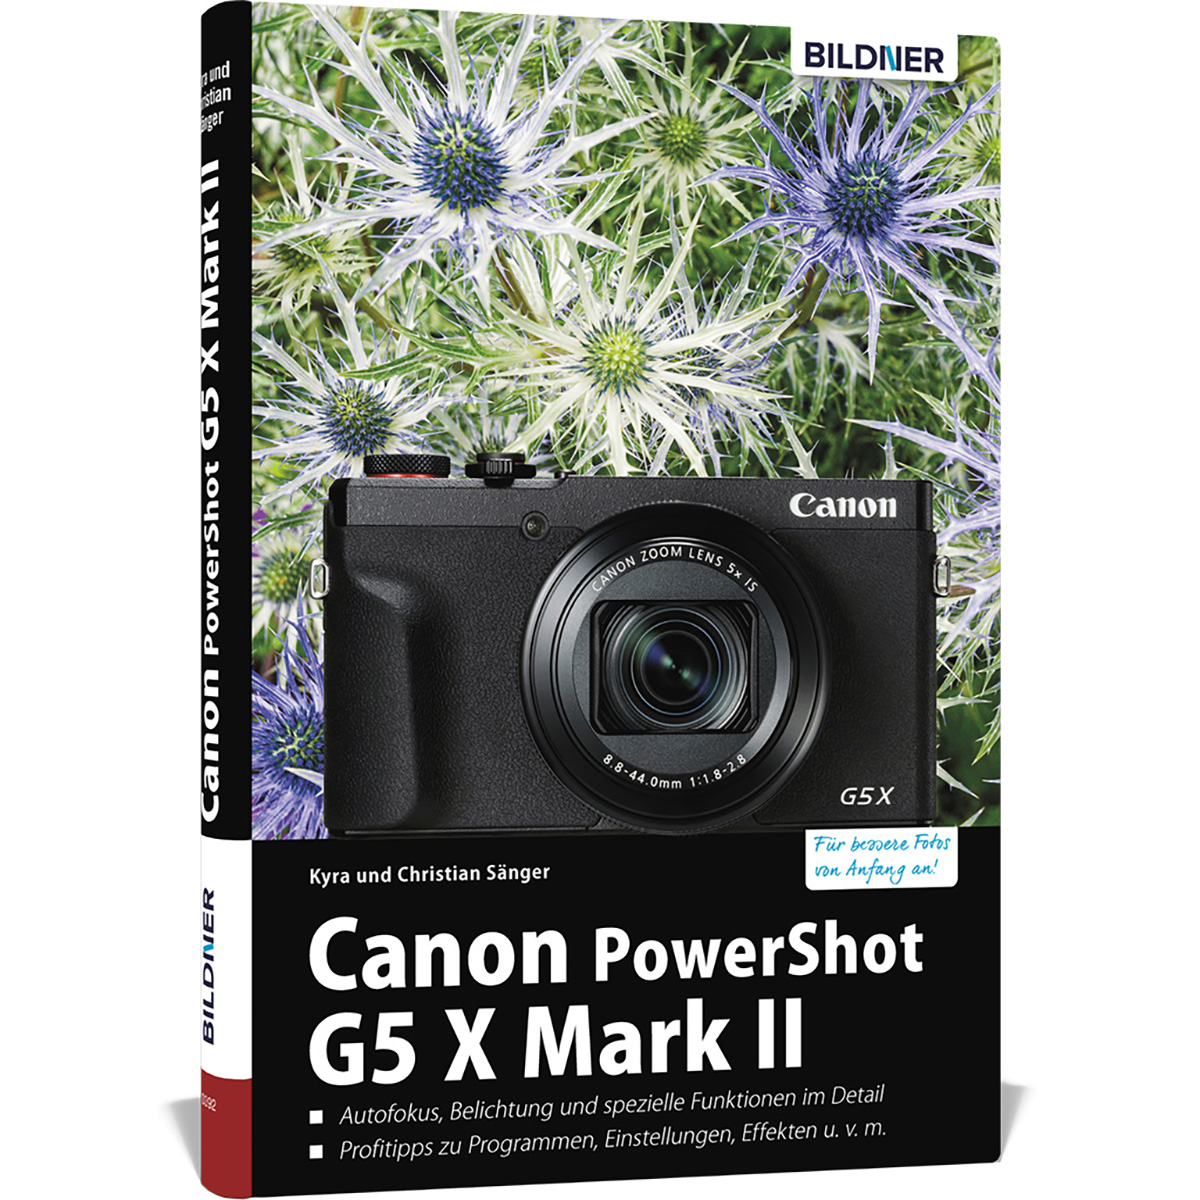 Kamera! Ihrer - G5 II Praxisbuch X umfangreiche zu Das Canon PowerShot Mark